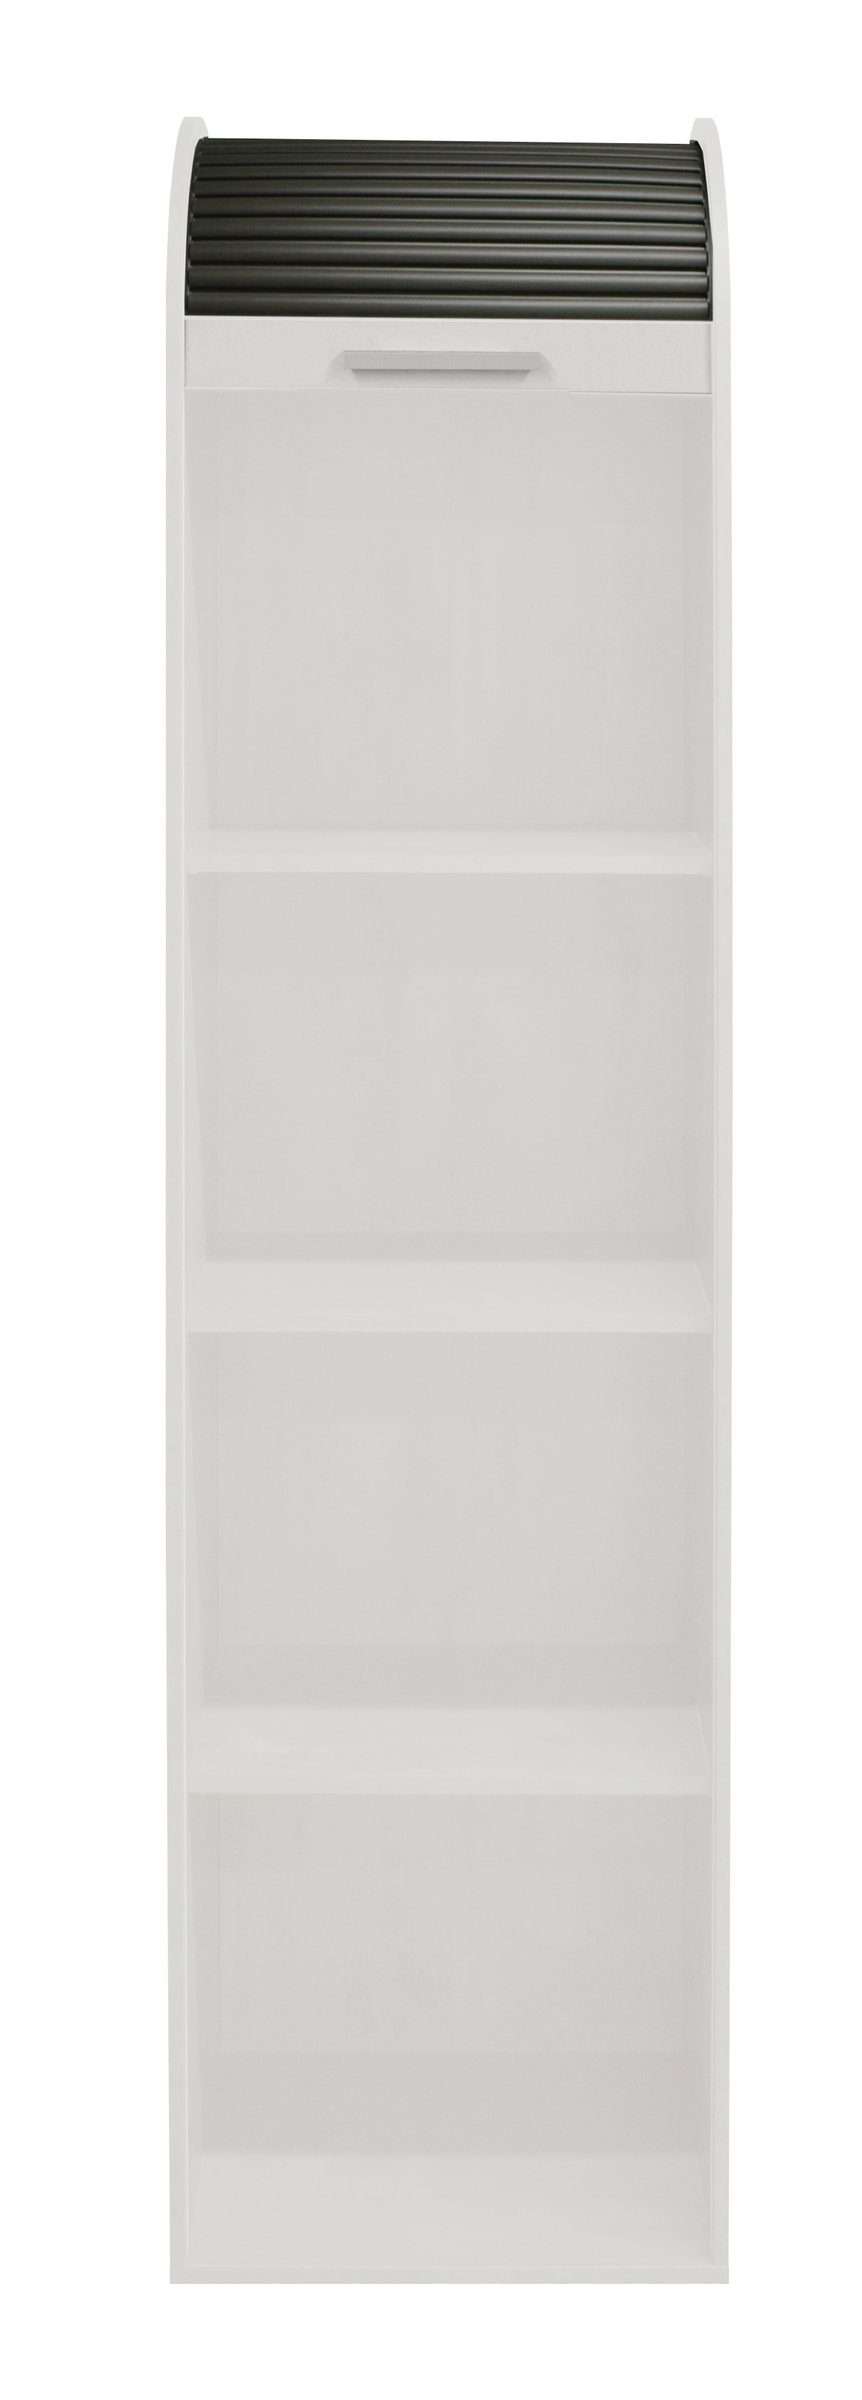 möbelando Jalousieschrank Jalousieschrank (BxHxT: 46x192x44 cm) in weiß matt lack / graphit mit 2 Einlegeböden | Rollladenschränke